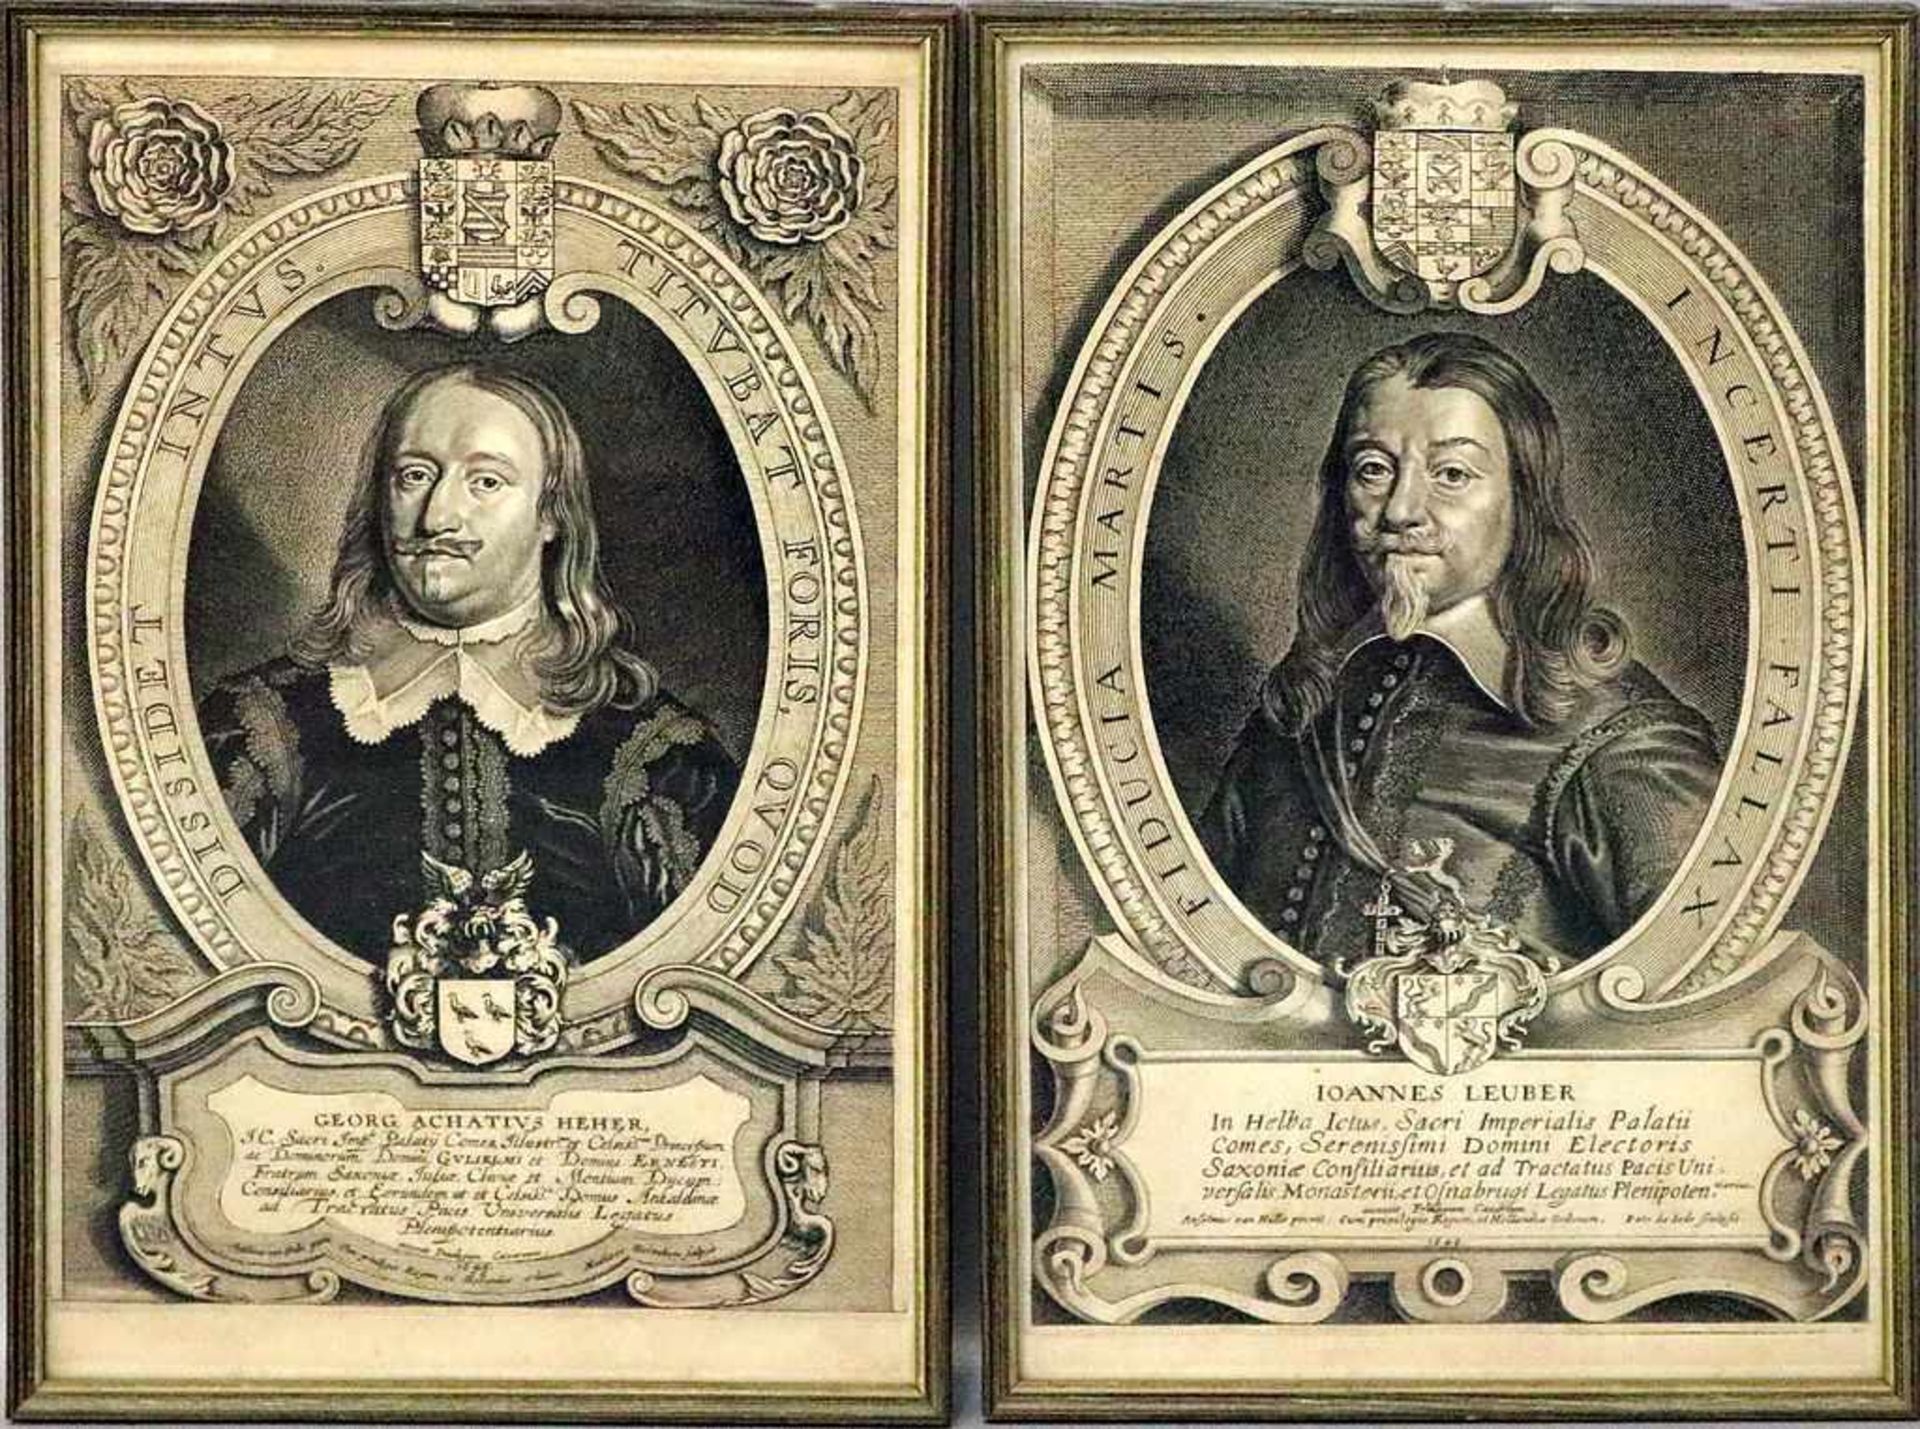 Borrekens, Mathieu (c.1615-c.1650)2 Kupferstiche: "GEORG ACHATIVS HEHER" und "IOANNES LEUBER", so